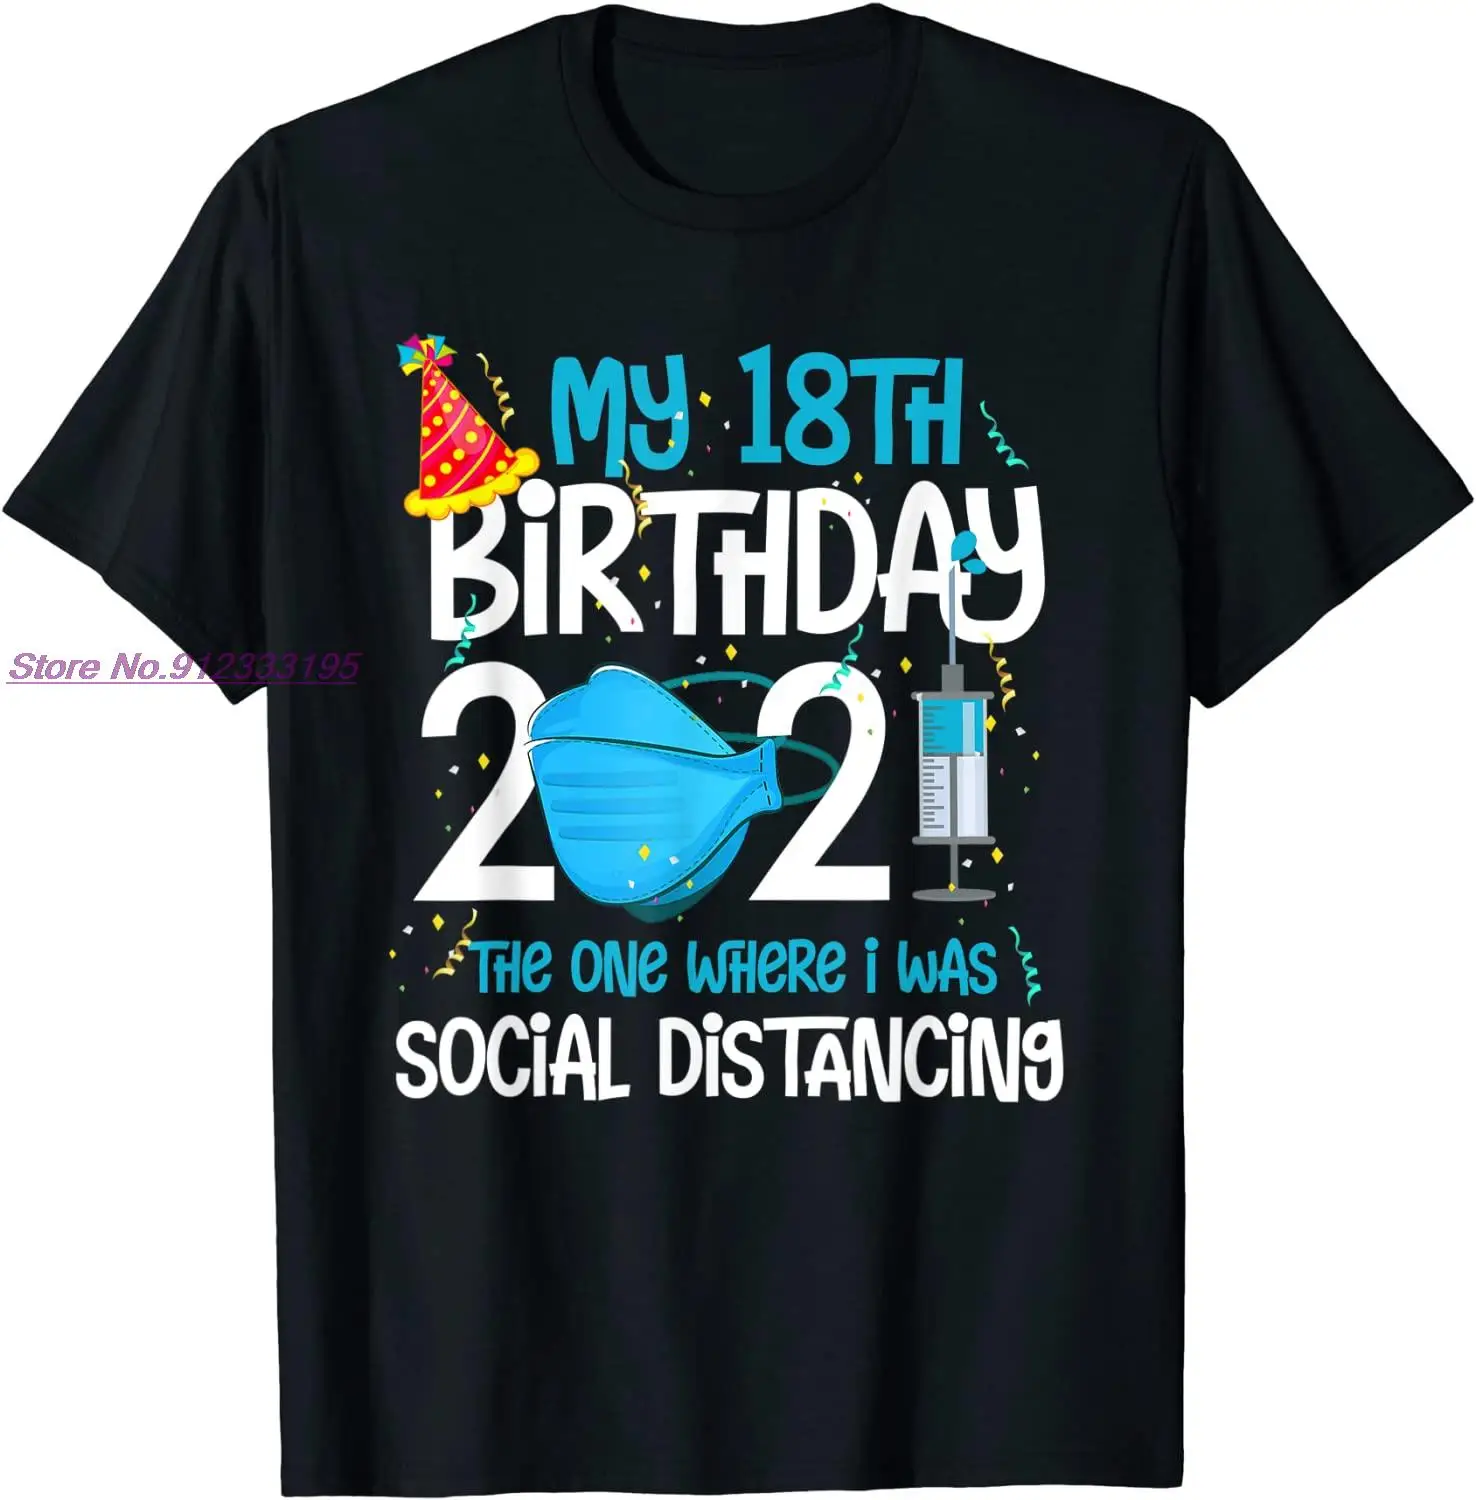 

Забавные подарочные футболки My 18th Birthday 2021 Для карантина 18 лет, Хлопковая мужская футболка, сумасшедшие топы, рубашка с забавным принтом